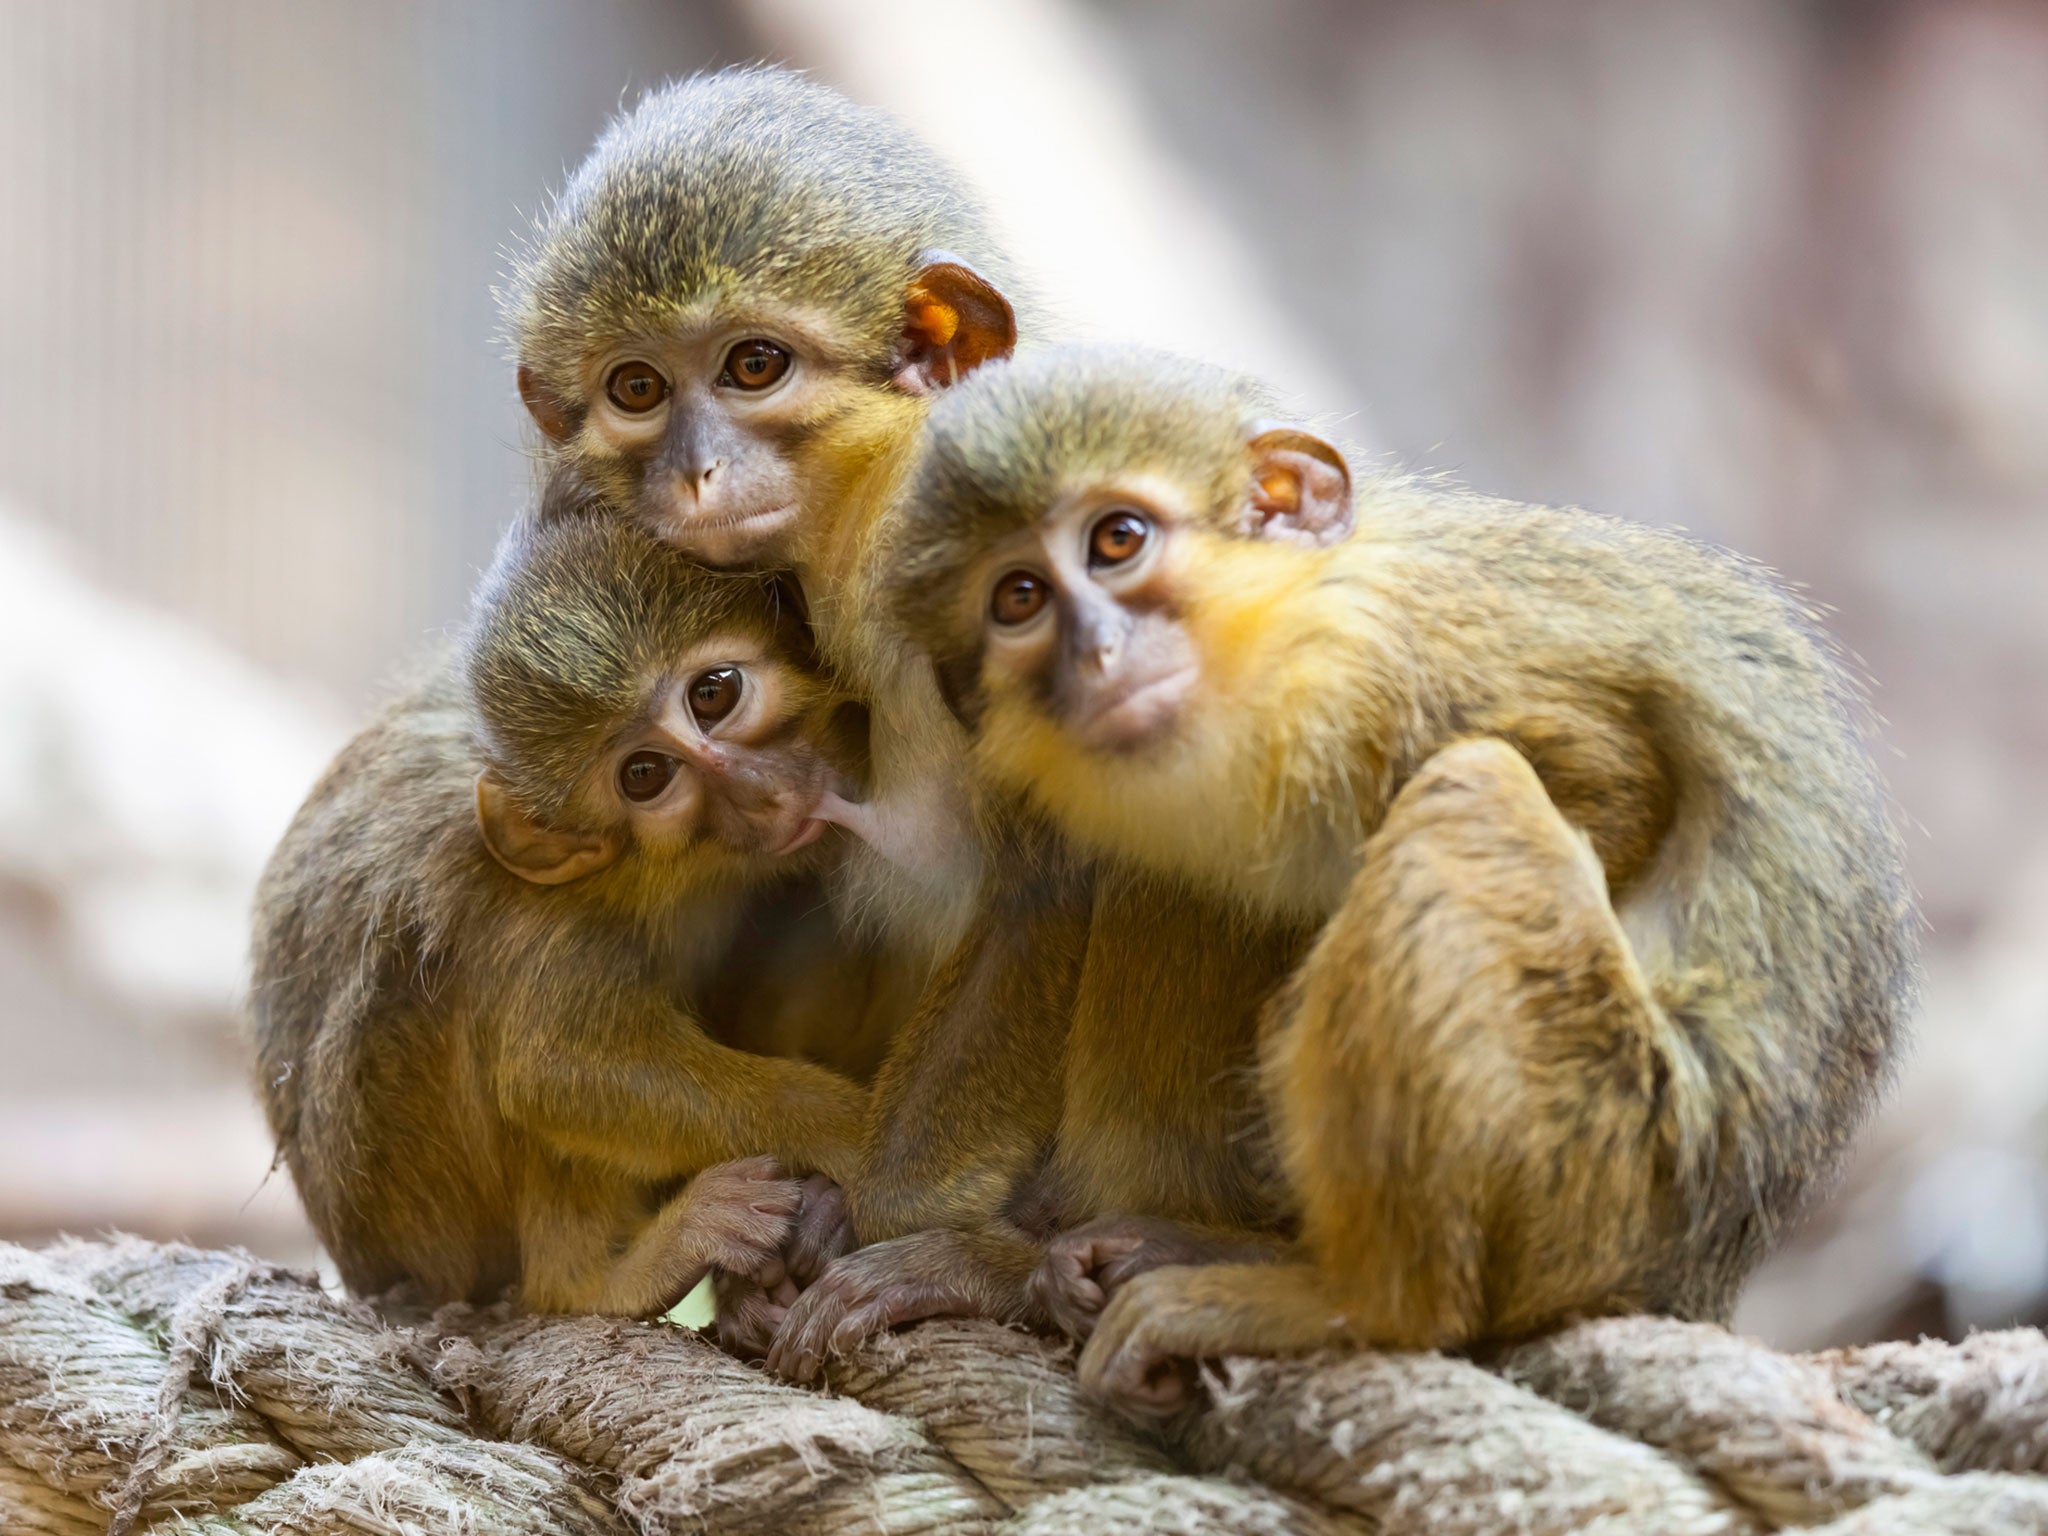 Con khỉ con đáng yêu luôn là điều mà chúng ta không thể bỏ qua. Xem những hình ảnh này sẽ khiến bạn muốn nắm tay và ôm chặt chúng ngay lập tức.